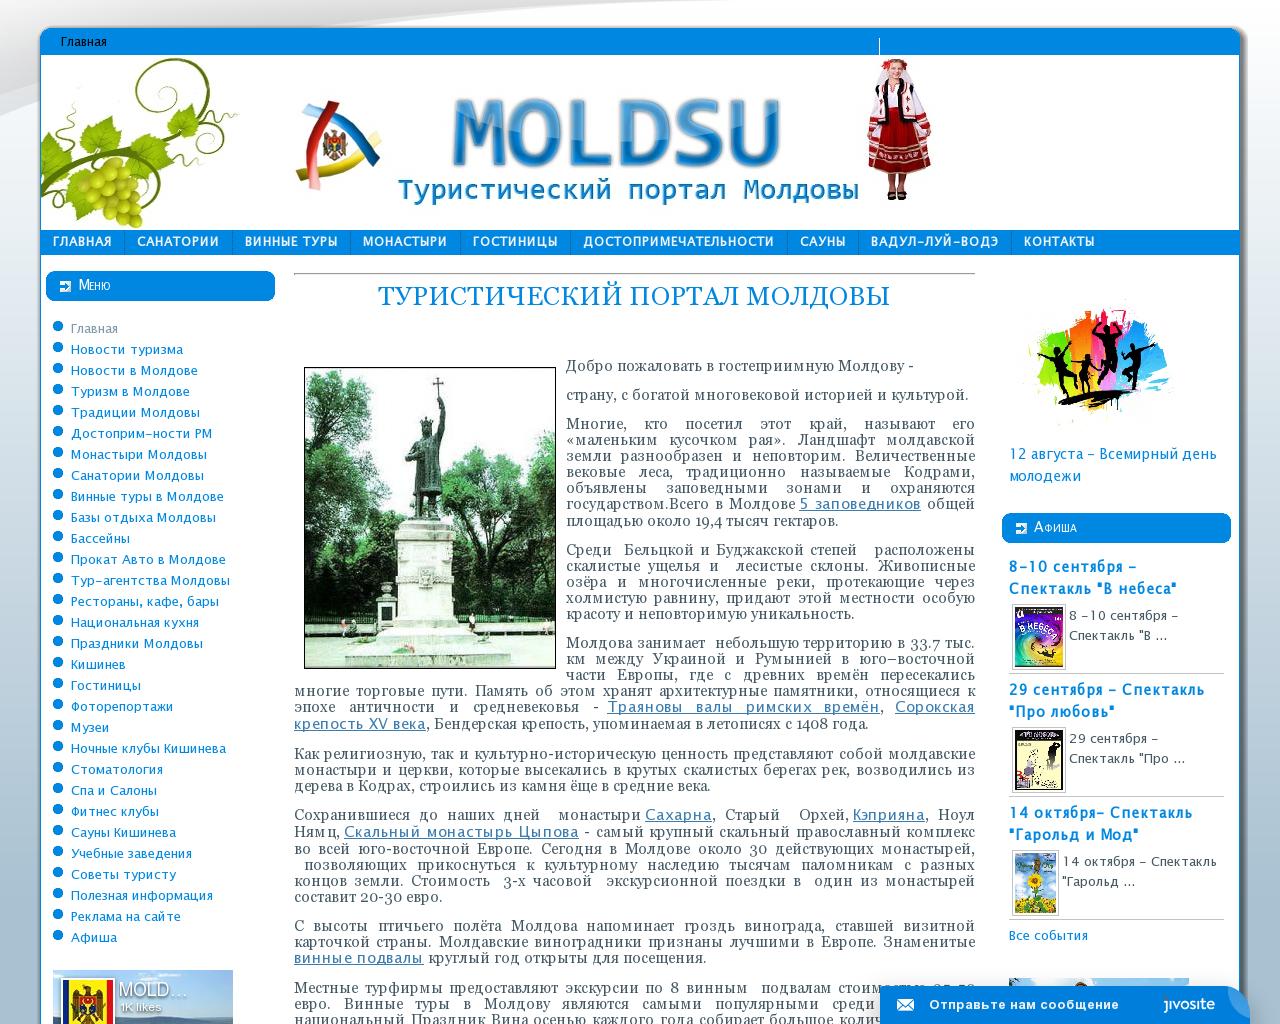 Изображение сайта mold.su в разрешении 1280x1024